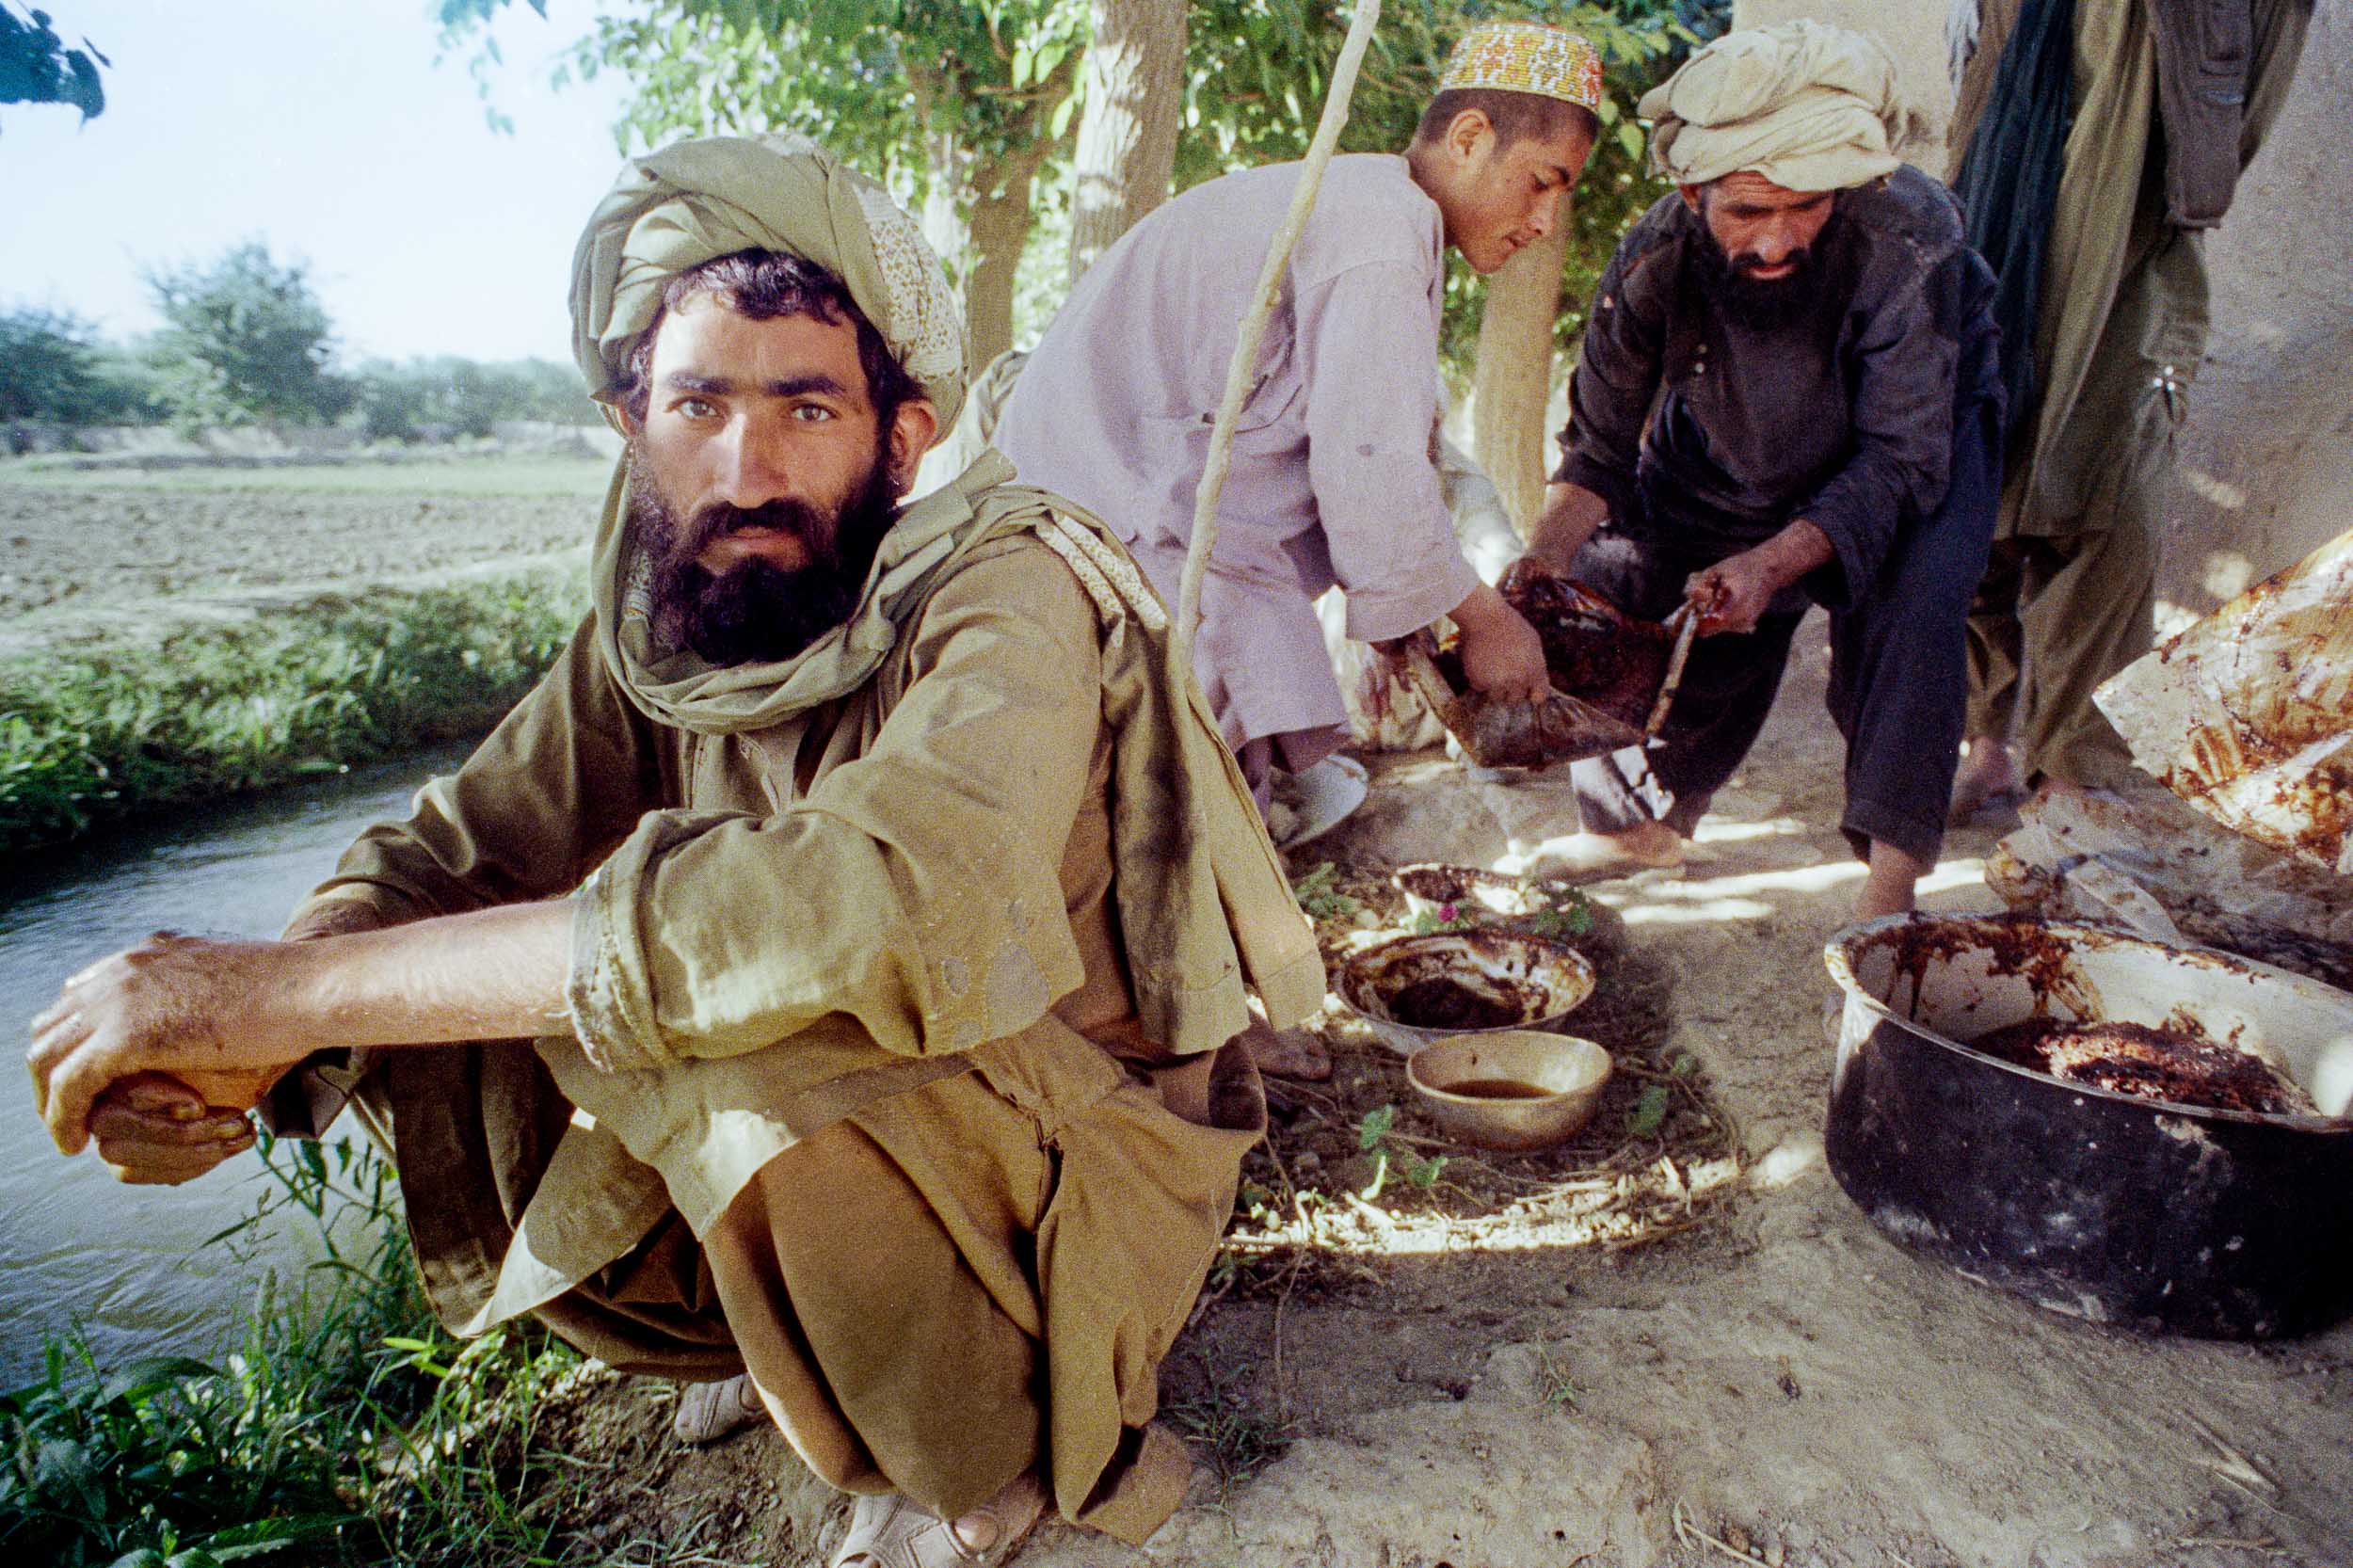 Processing Opium, Afghanistan 1988